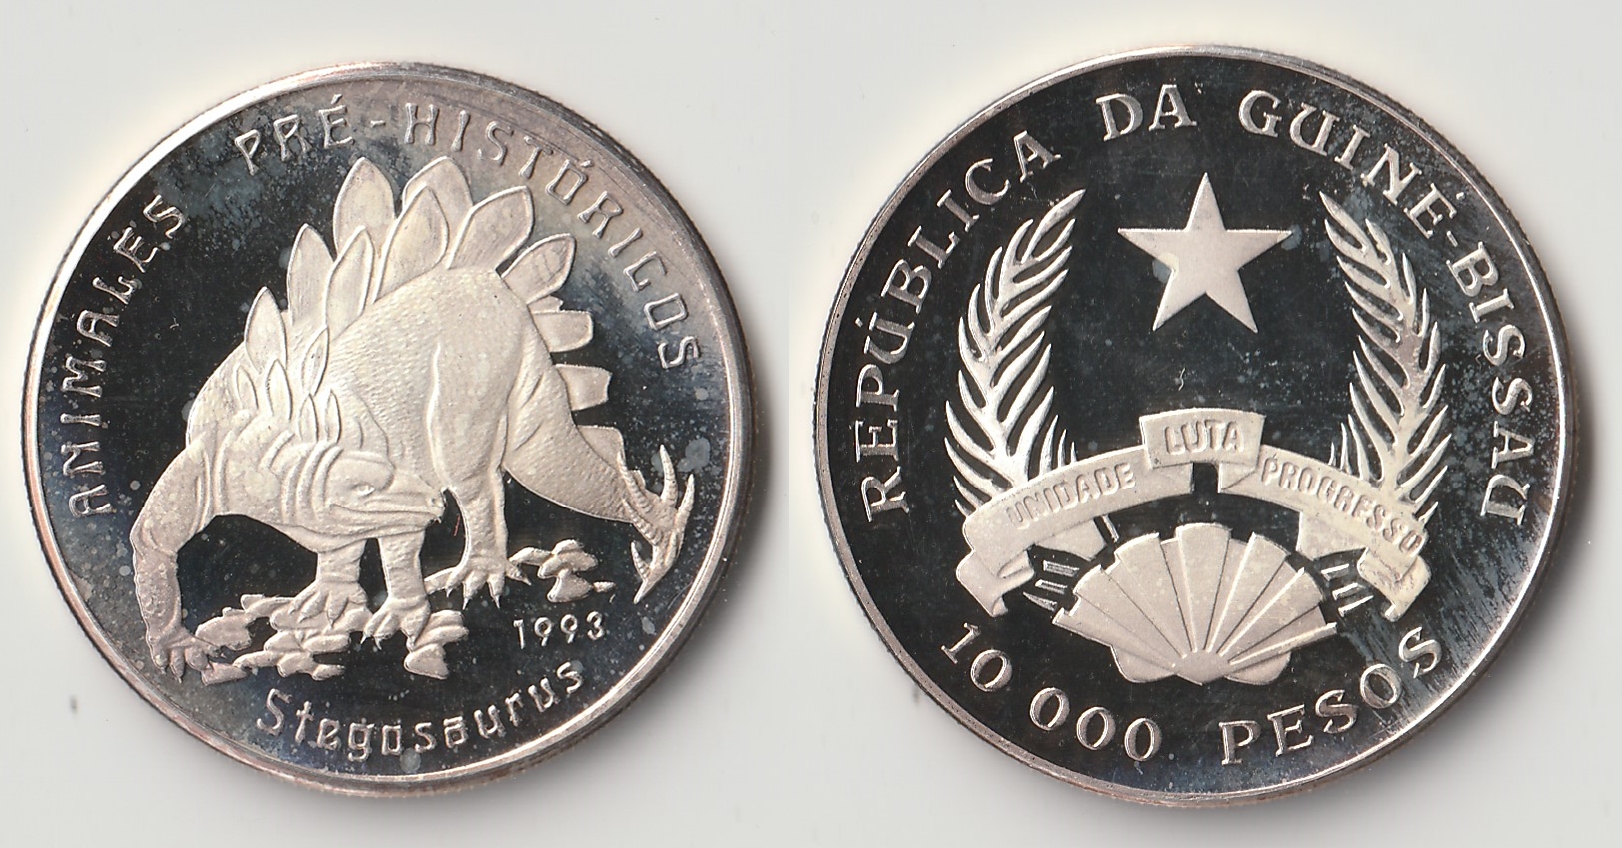 1993 guinea bissau 10000 pesos.jpg